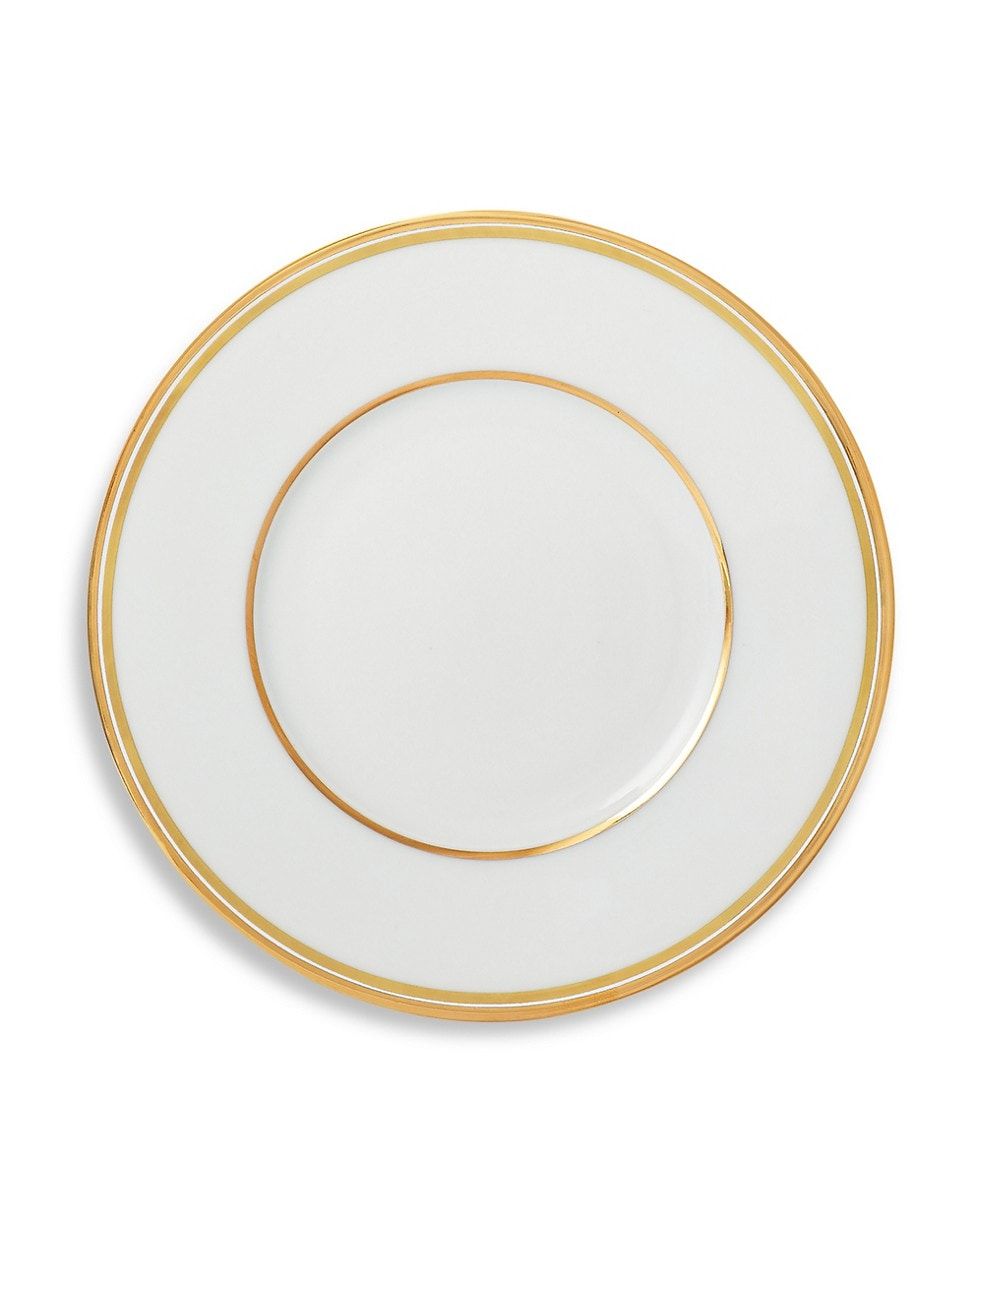 Ralph Lauren Wilshire Salad Plate | Saks Fifth Avenue